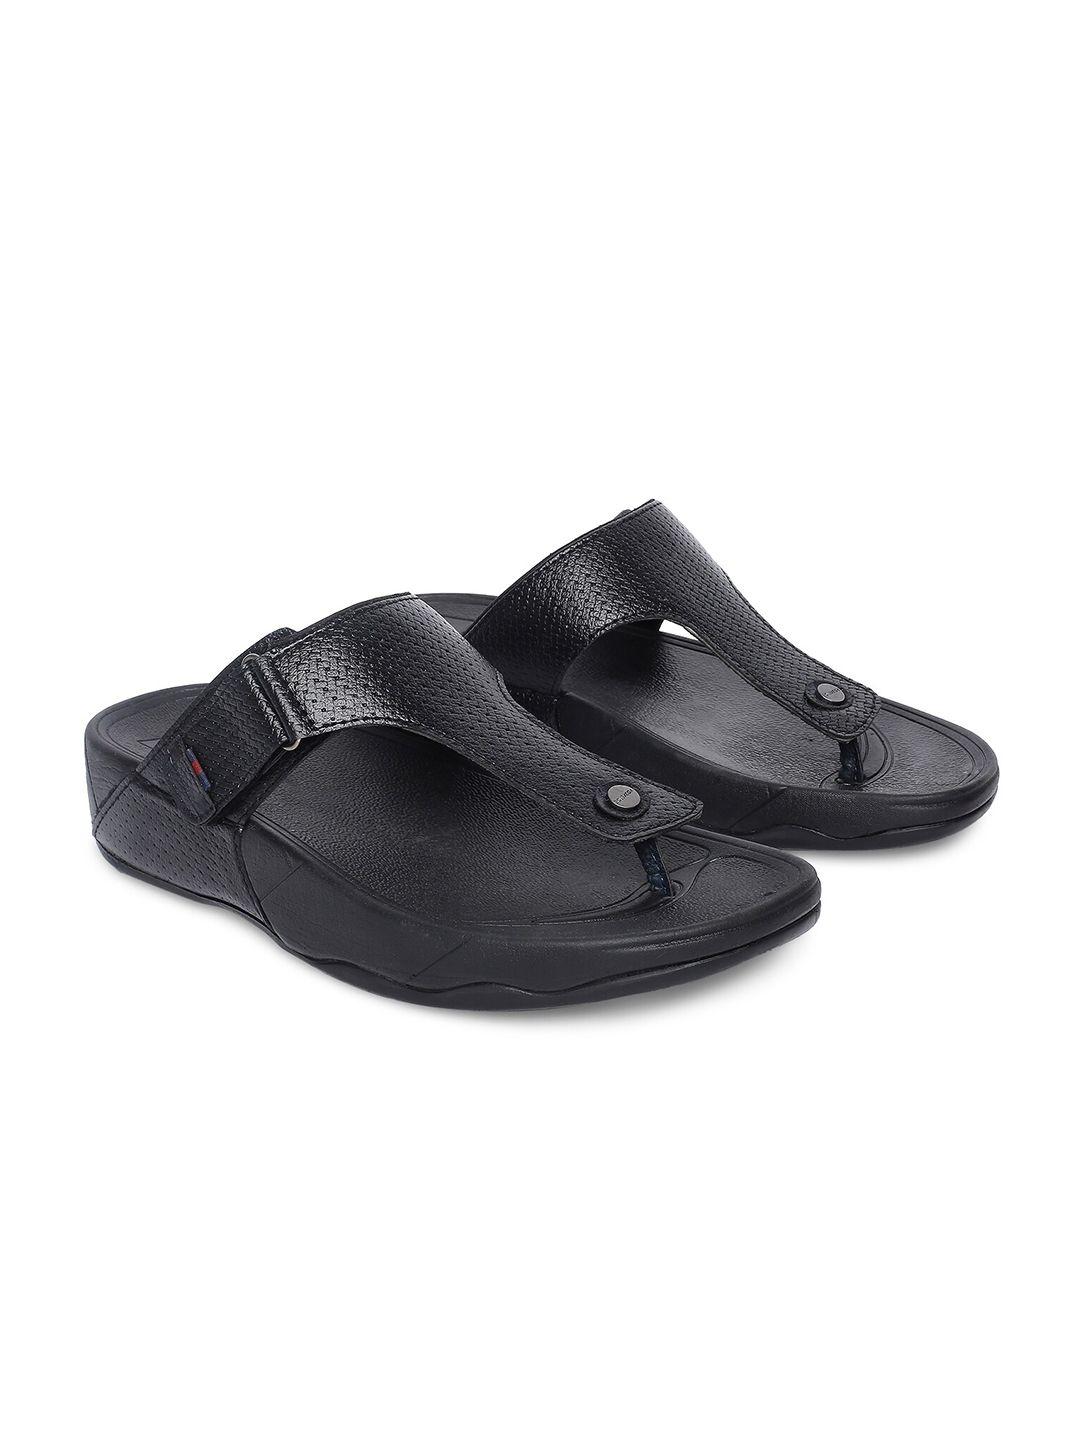 buckaroo-men-textured-comfort-sandals